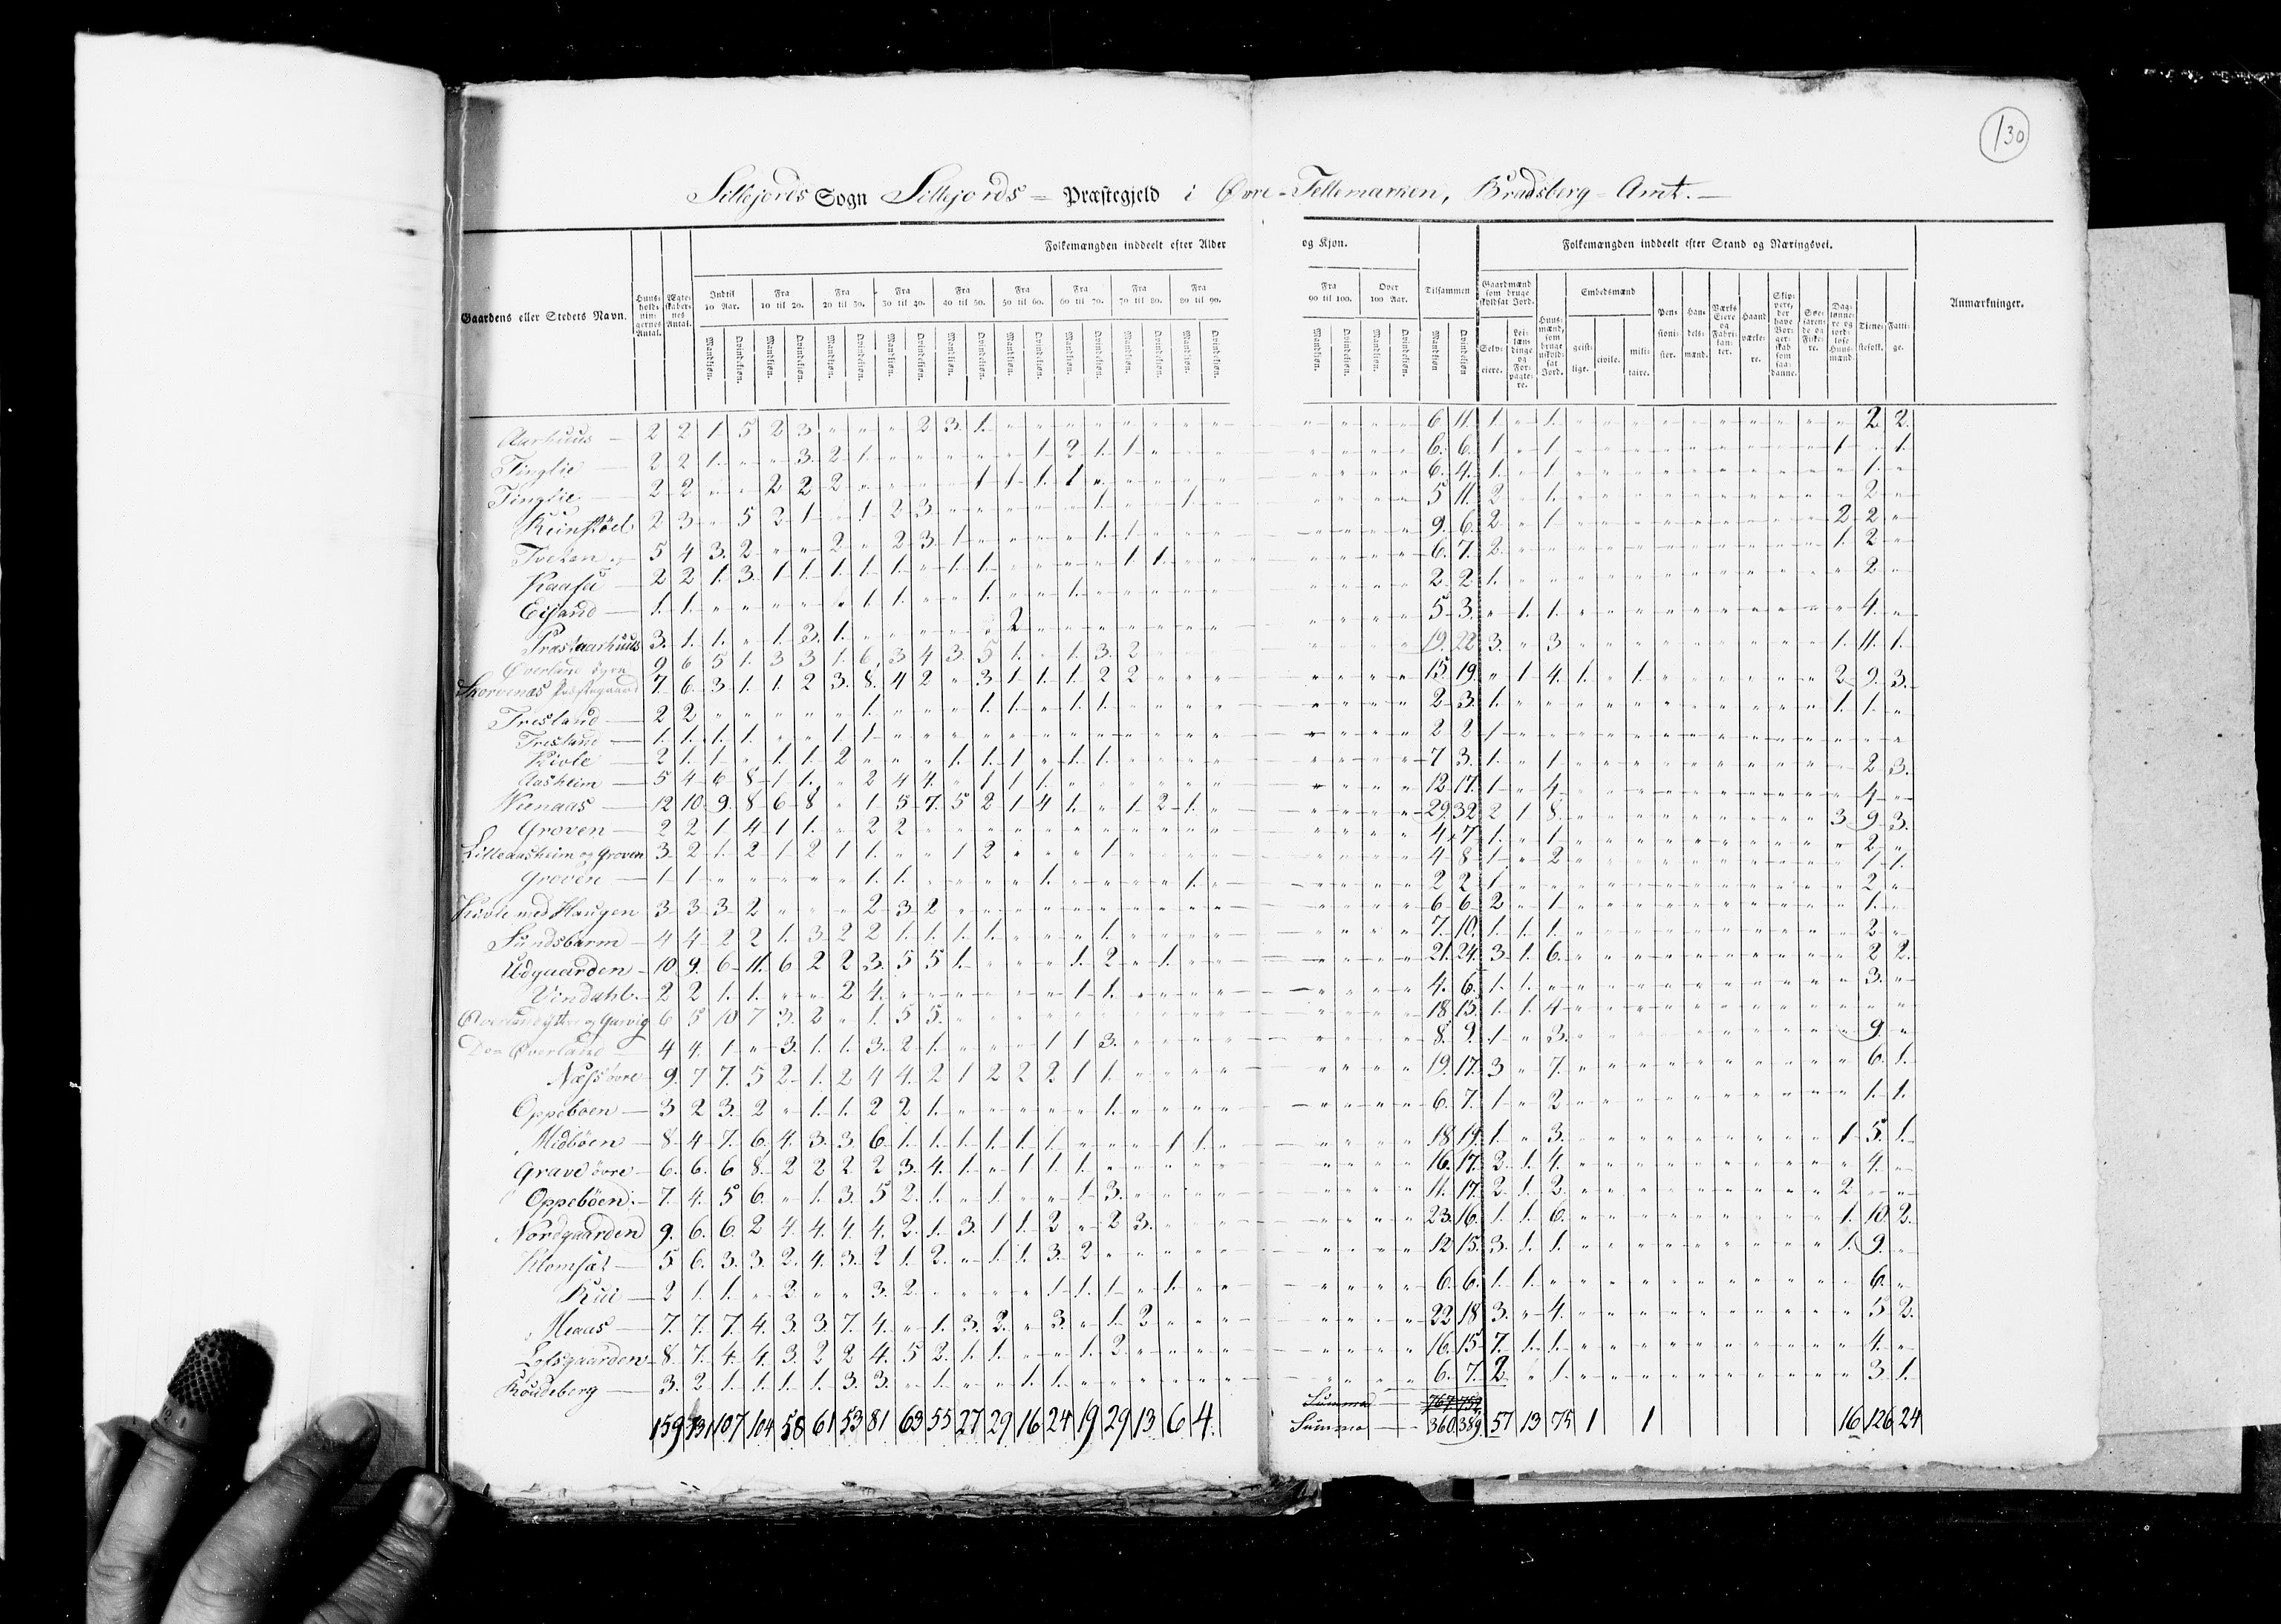 RA, Census 1825, vol. 9: Bratsberg amt, 1825, p. 130